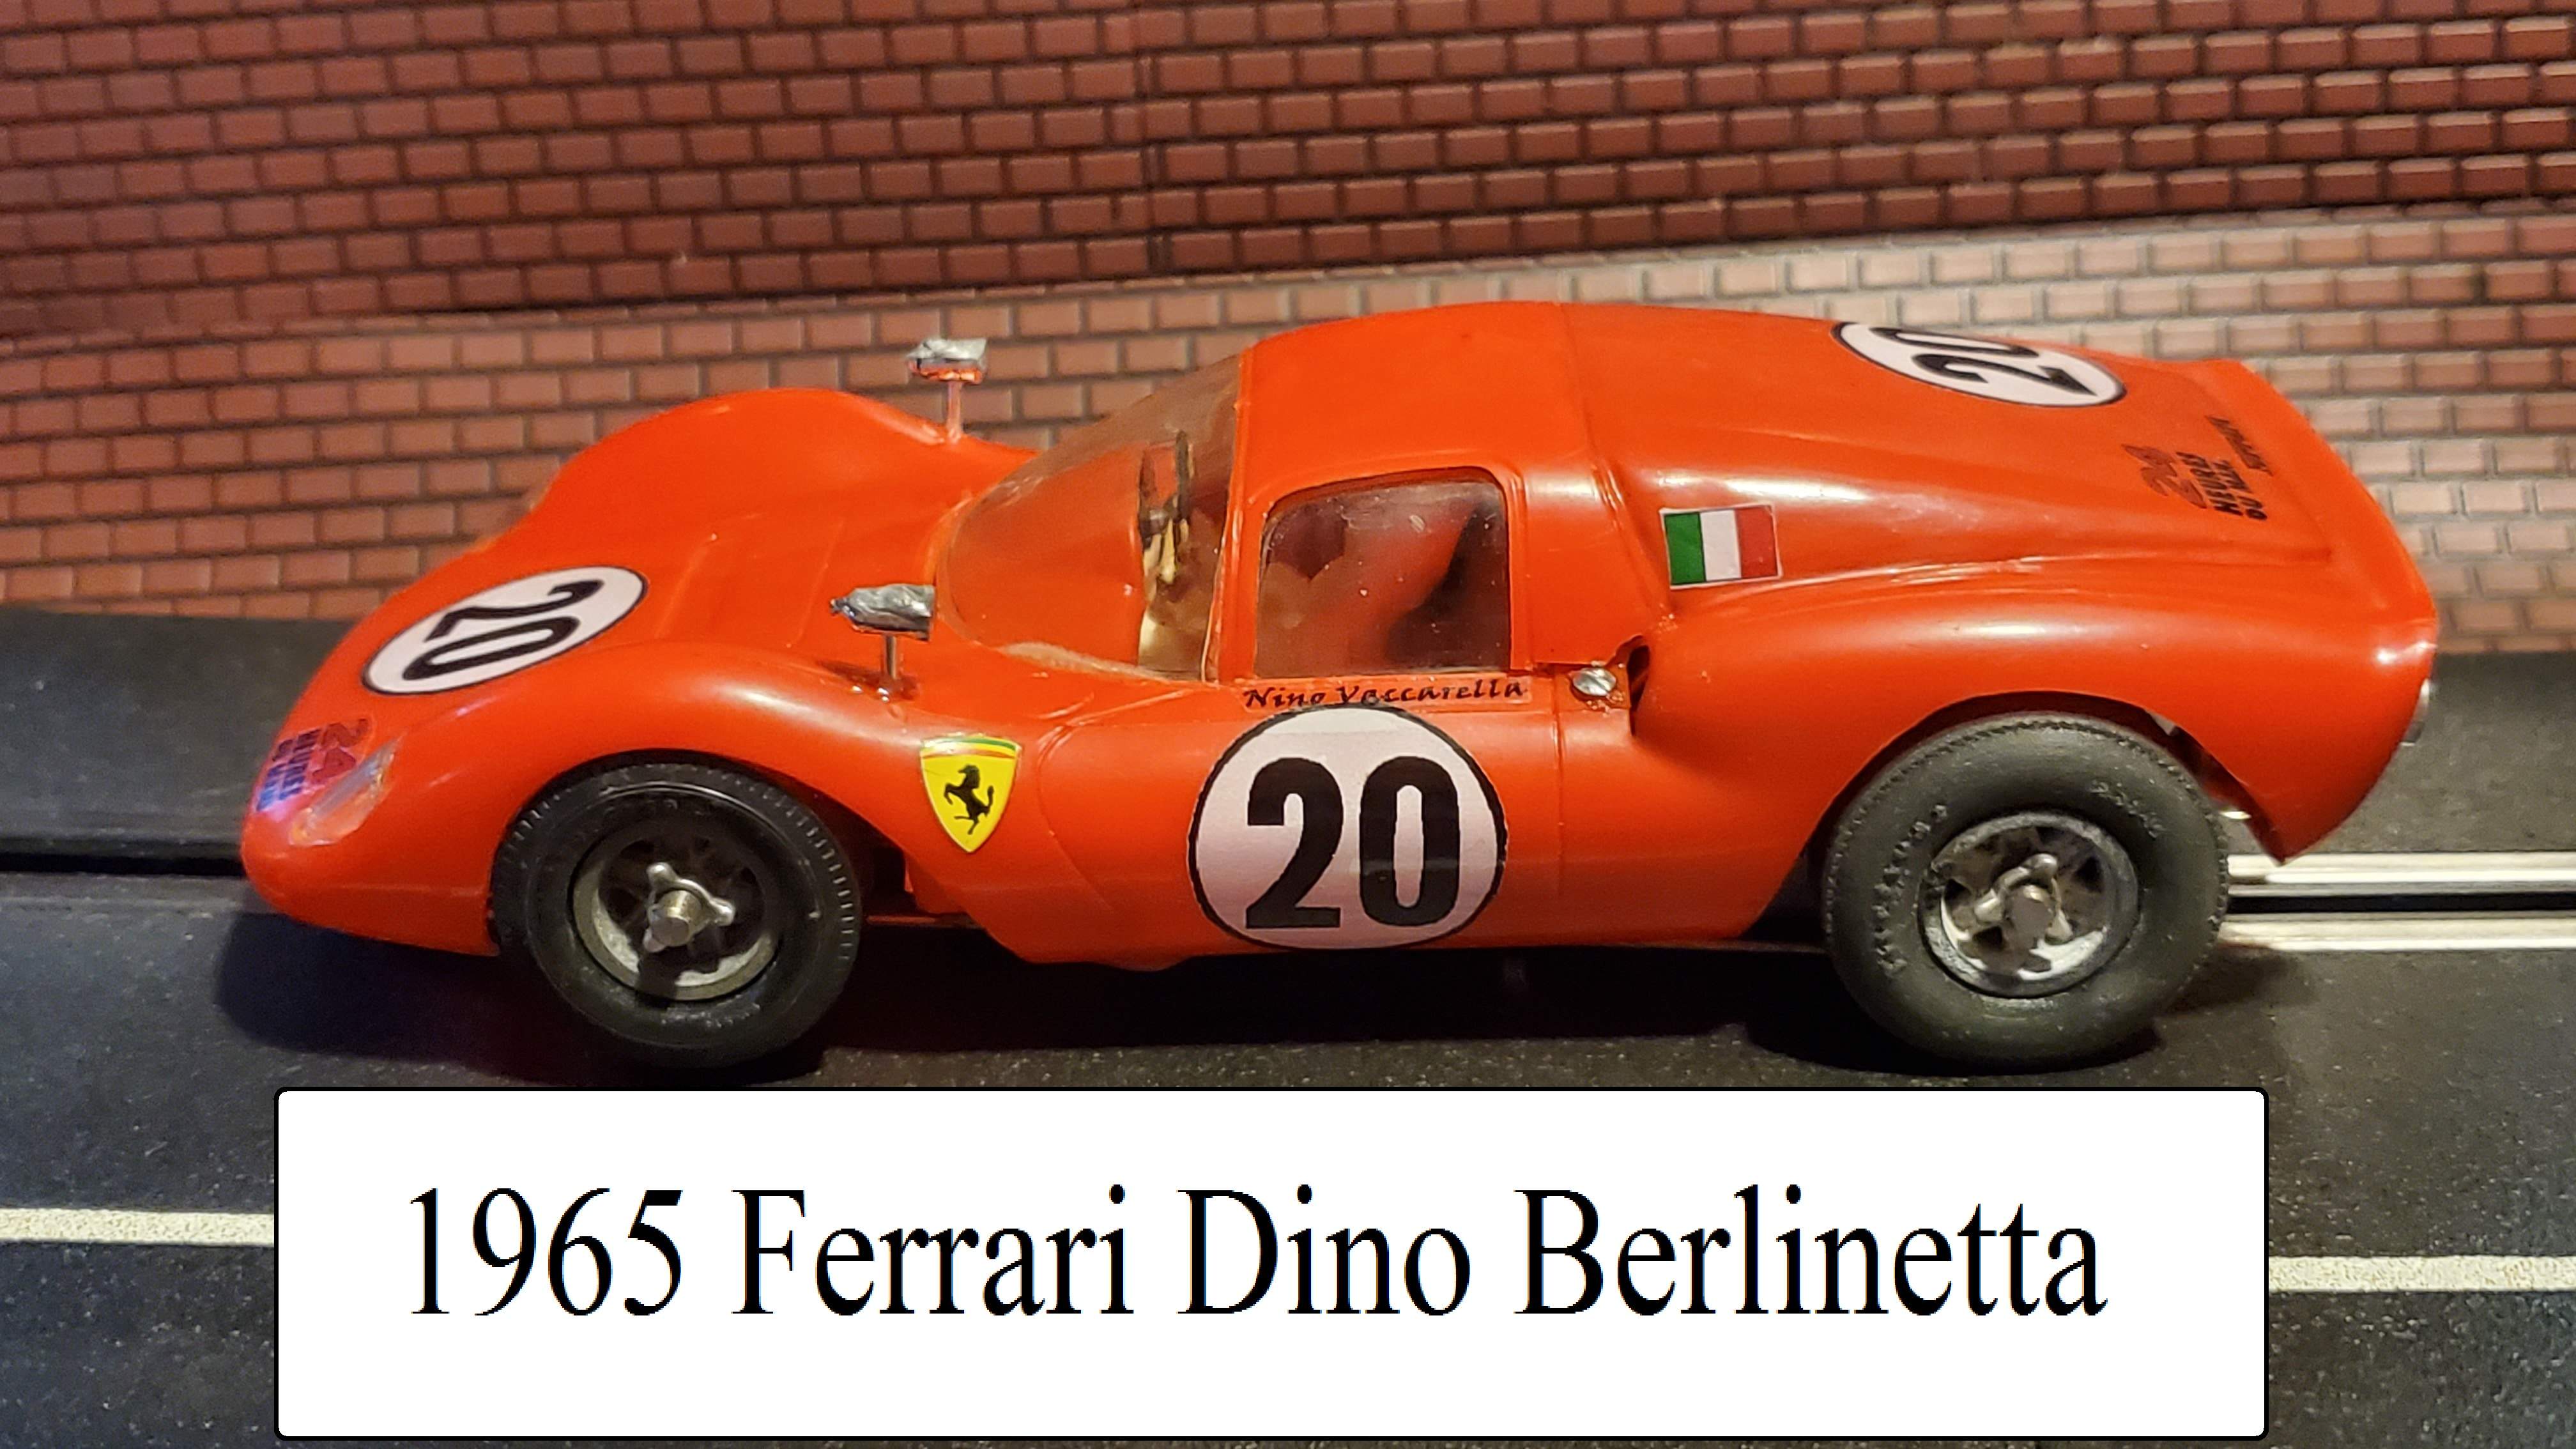 * SALE, Save $70.00 off our Ebay Price * 1965 COX Ferrari Dino Berlinetta / Ferrari Dine 166 P on COX Competition Chassis 1/24 Scale Slot Car